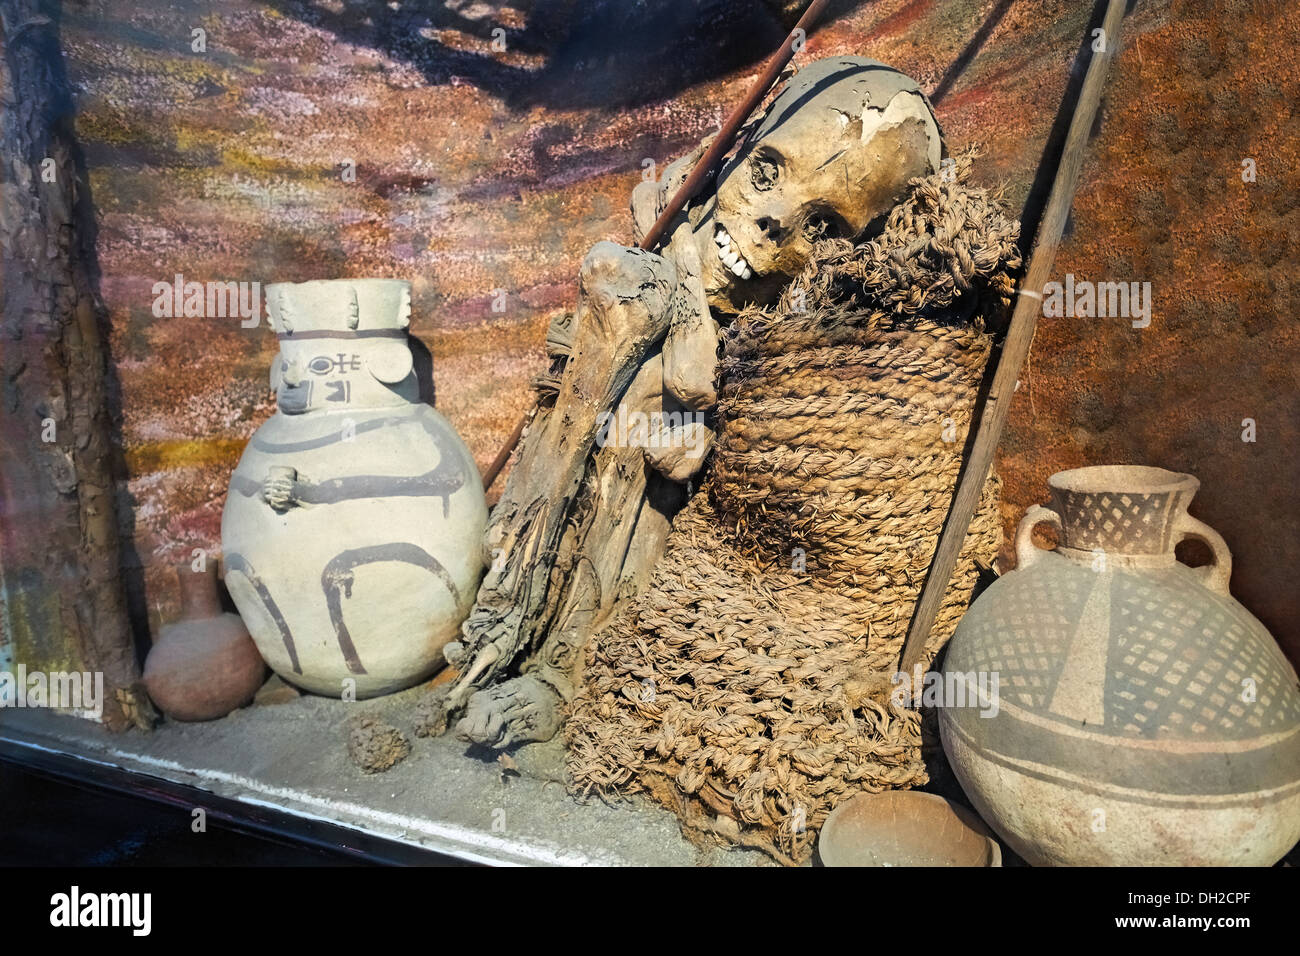 A mummy of a child sacrifice at the Archeology Museum of Ancash, Huaraz, Peru. Stock Photo